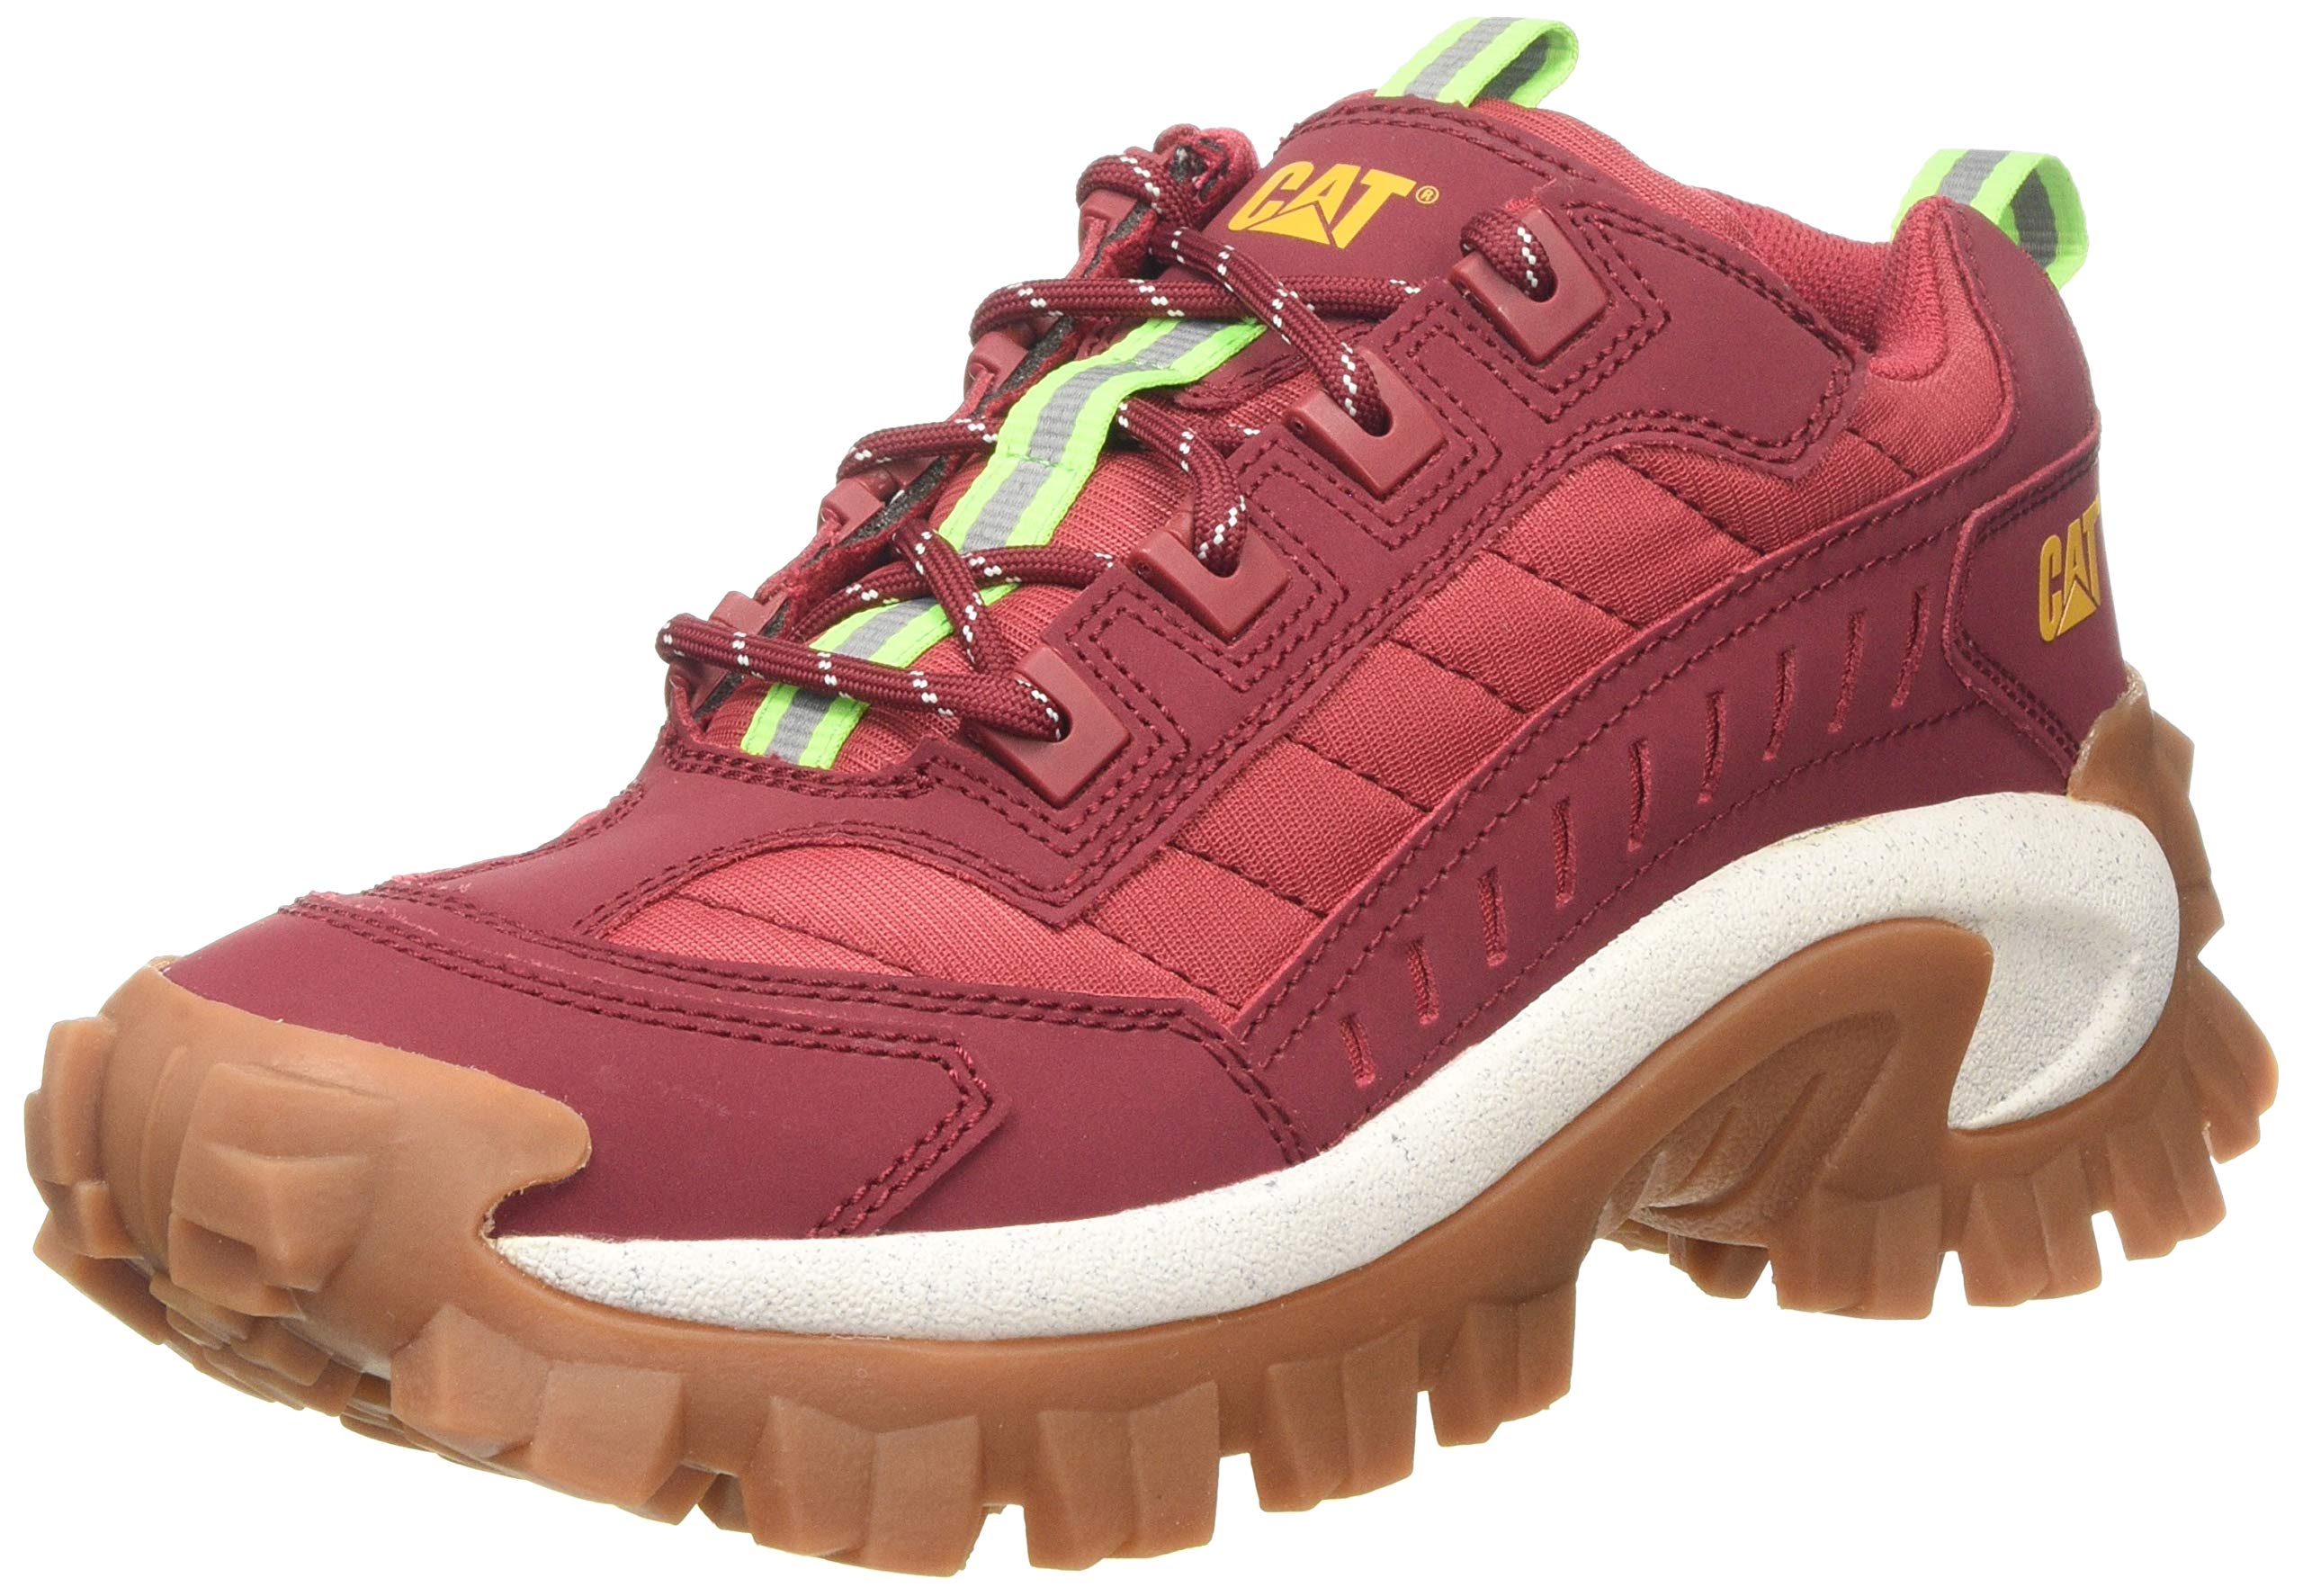 Caterpillar Unisex-Erwachsene Intruder Sneaker, Gr. 38 EU (4 UK), Rot